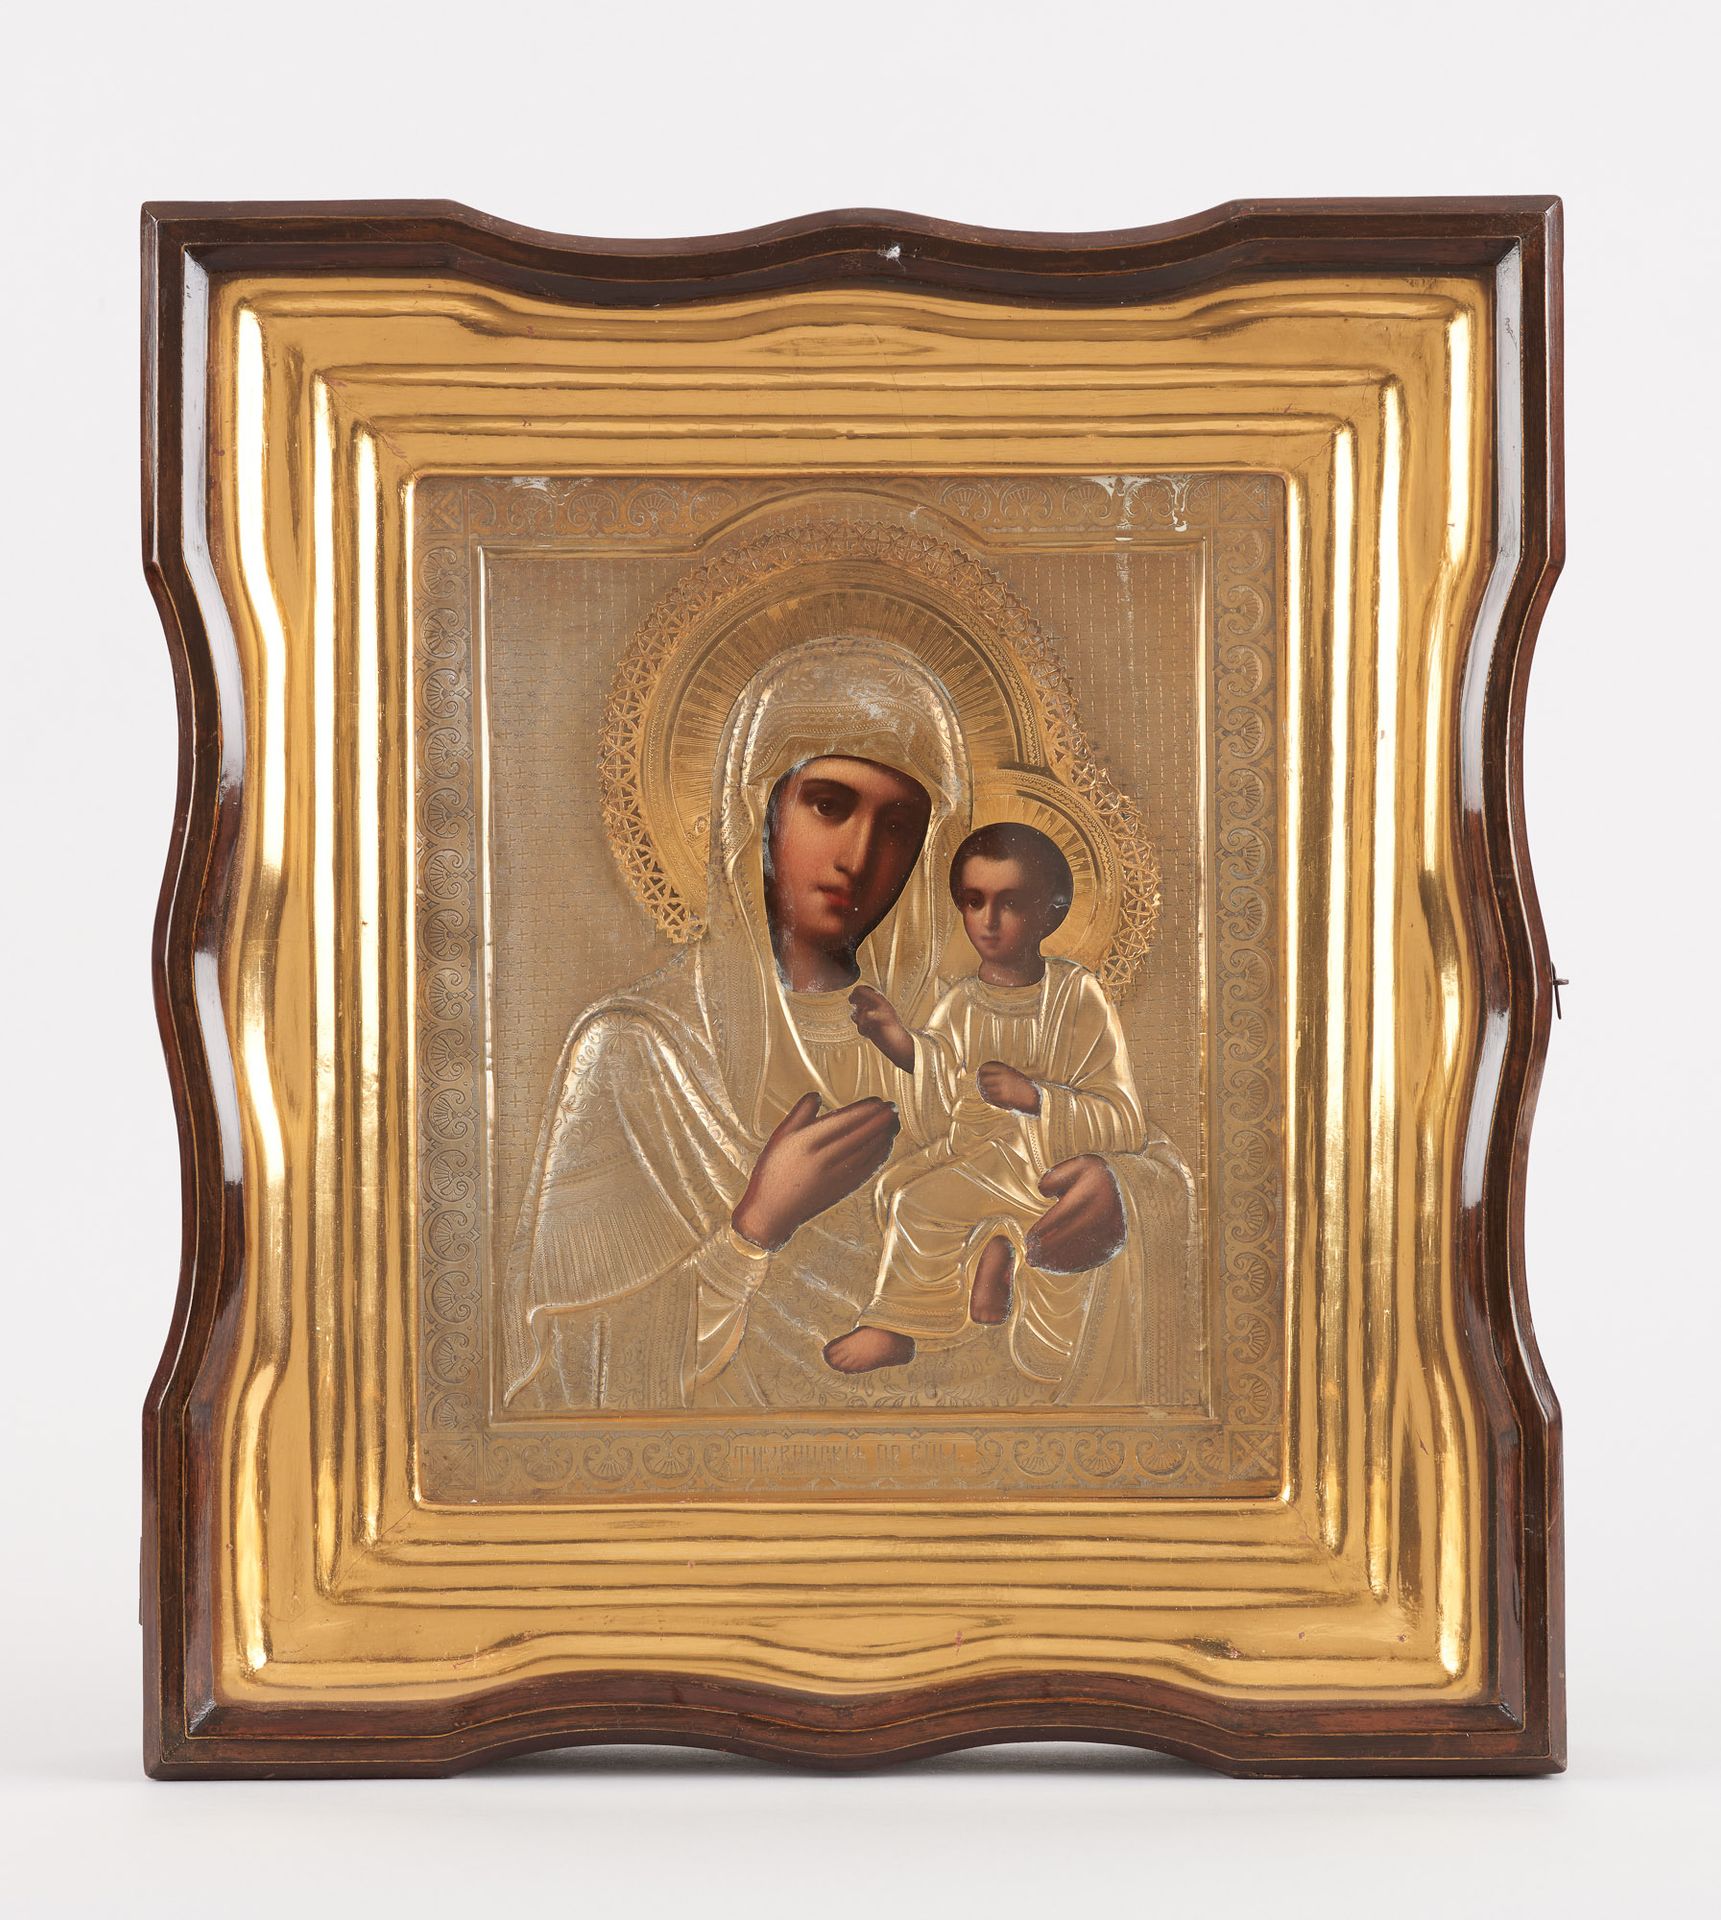 Travail russe. Icono sobre madera: Virgen y Niño con rizza de plata.

Marcado 84&hellip;